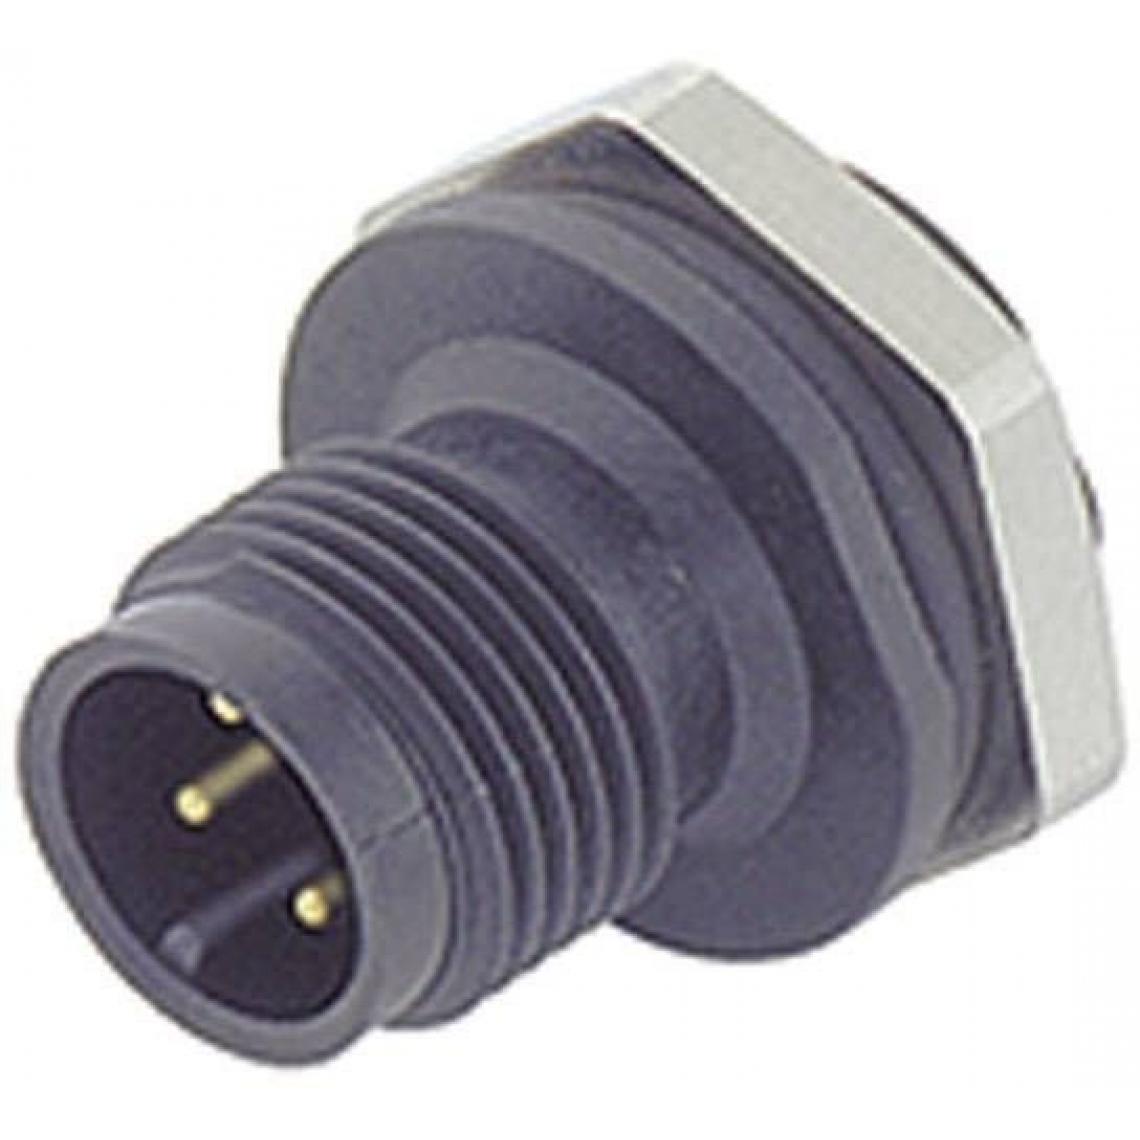 Inconnu - Binder Sensor-/Aktor-SteckverM12, Schraubverschluss, gerade Pole: 5 09-0433-87-05 Inhalt: 1St. - Interrupteurs et prises étanches